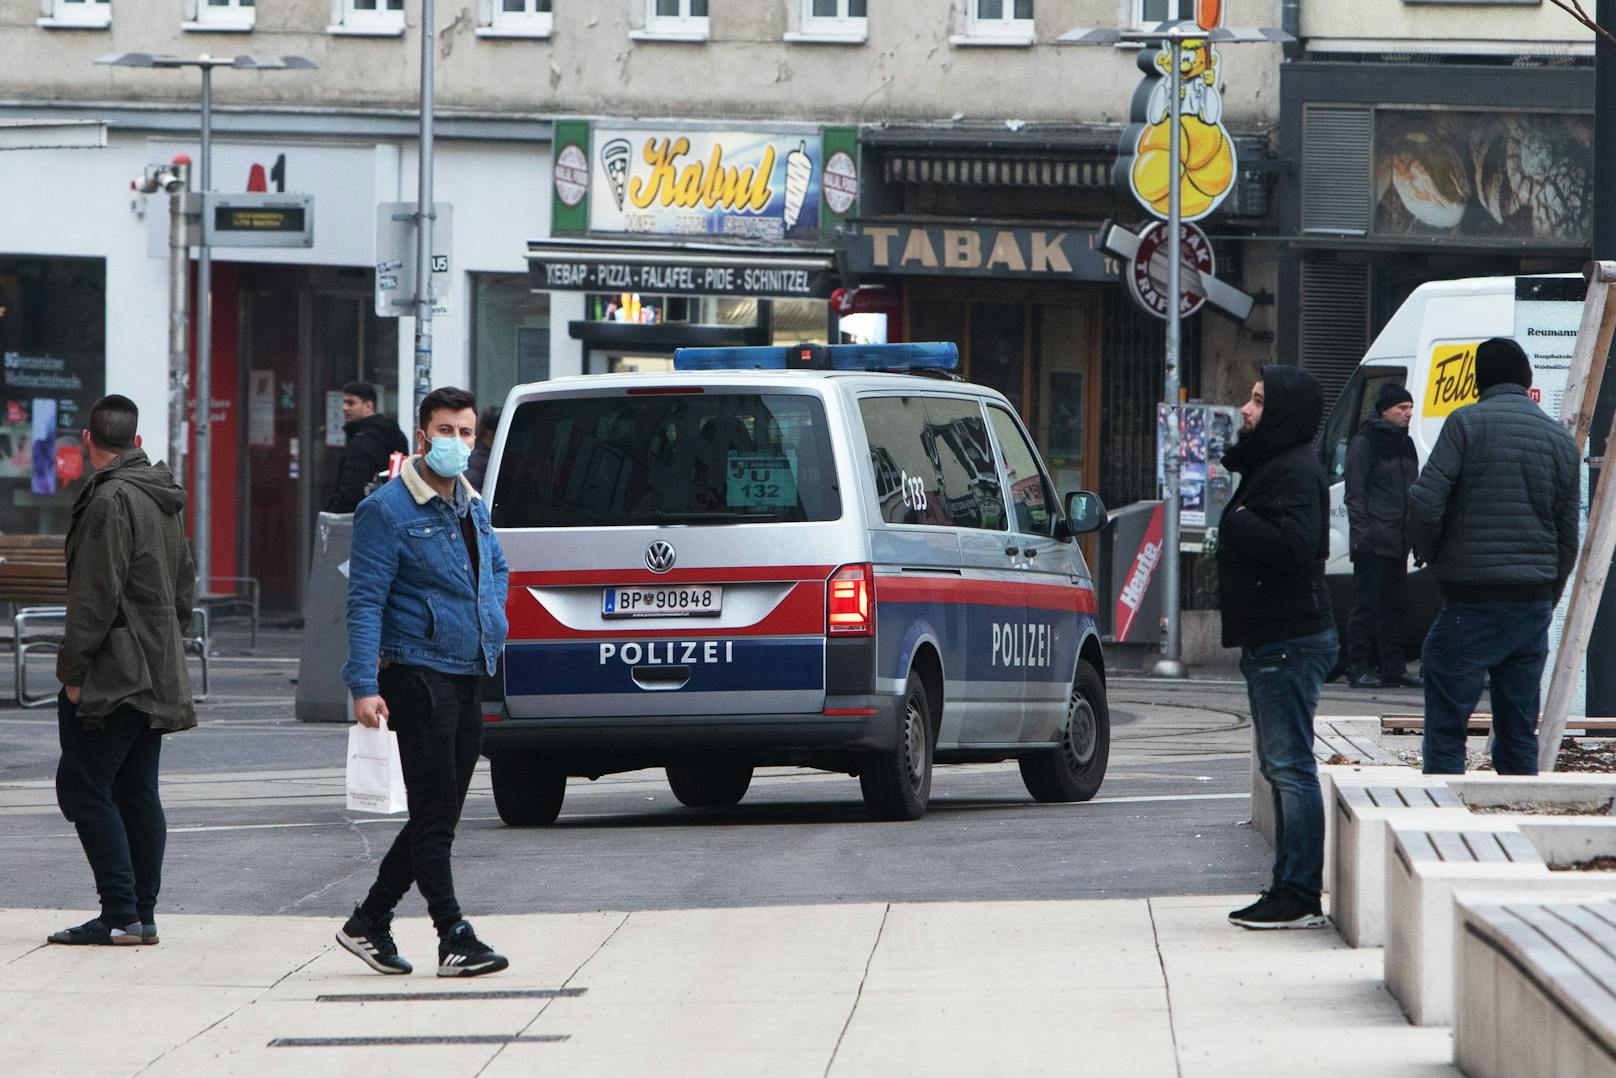 Die Polizei musste am Samstag in Wien wegen eines rabiaten Ladendiebs ausrücken und diesen festnehmen. (Archivfoto)